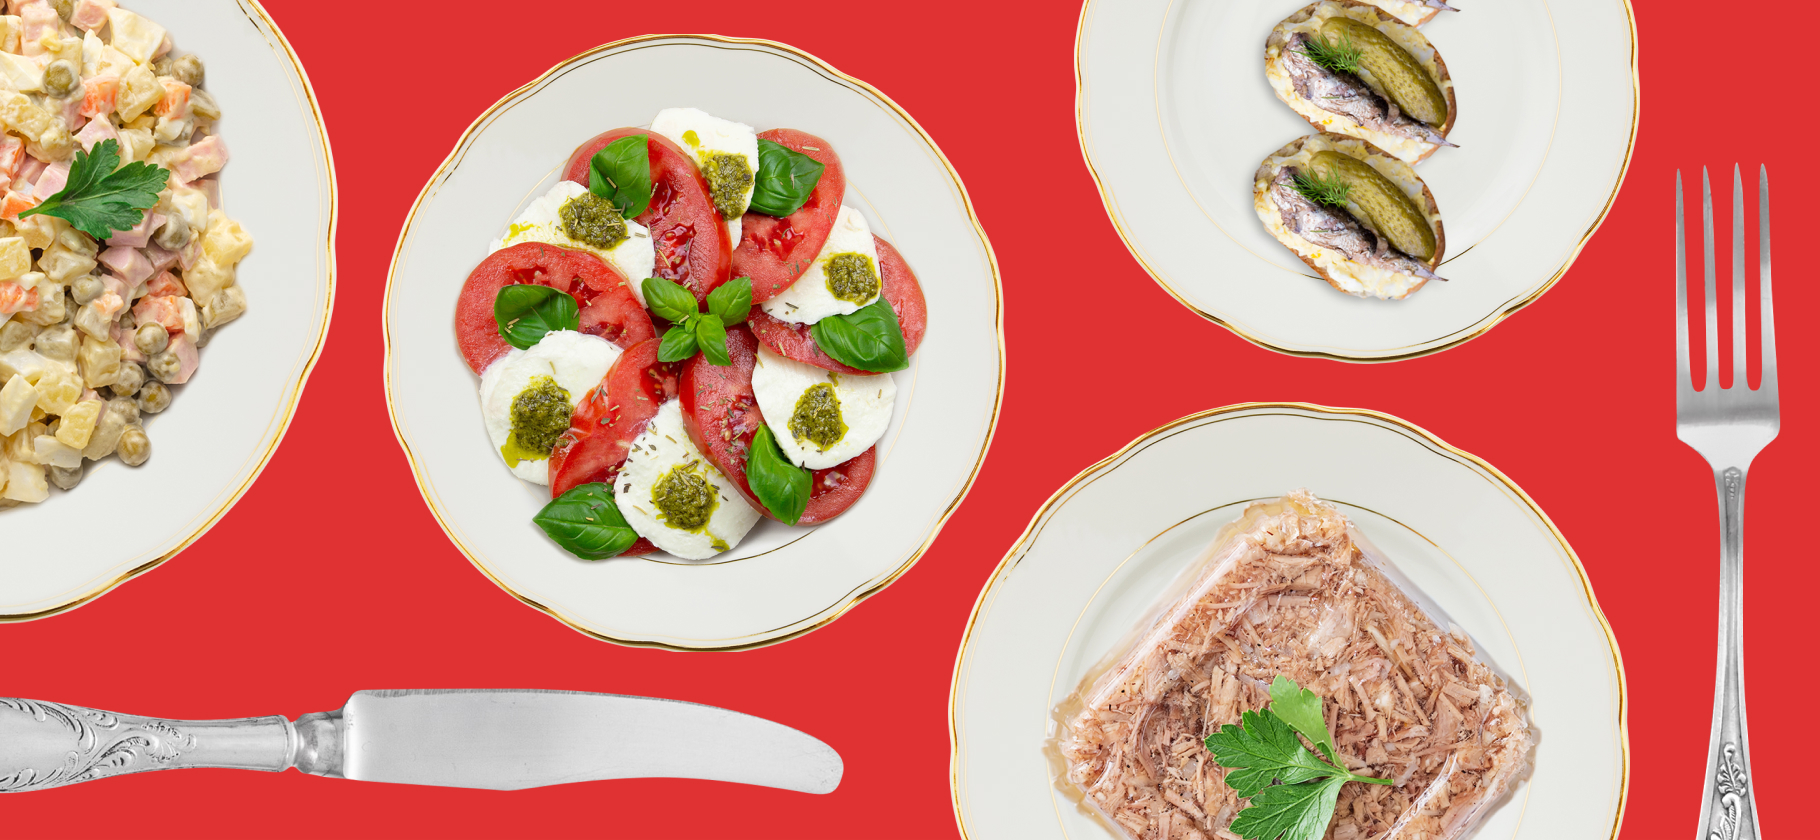 Тартинки со шпротами и оливье с бужениной: рецепты нашей любимой новогодней еды